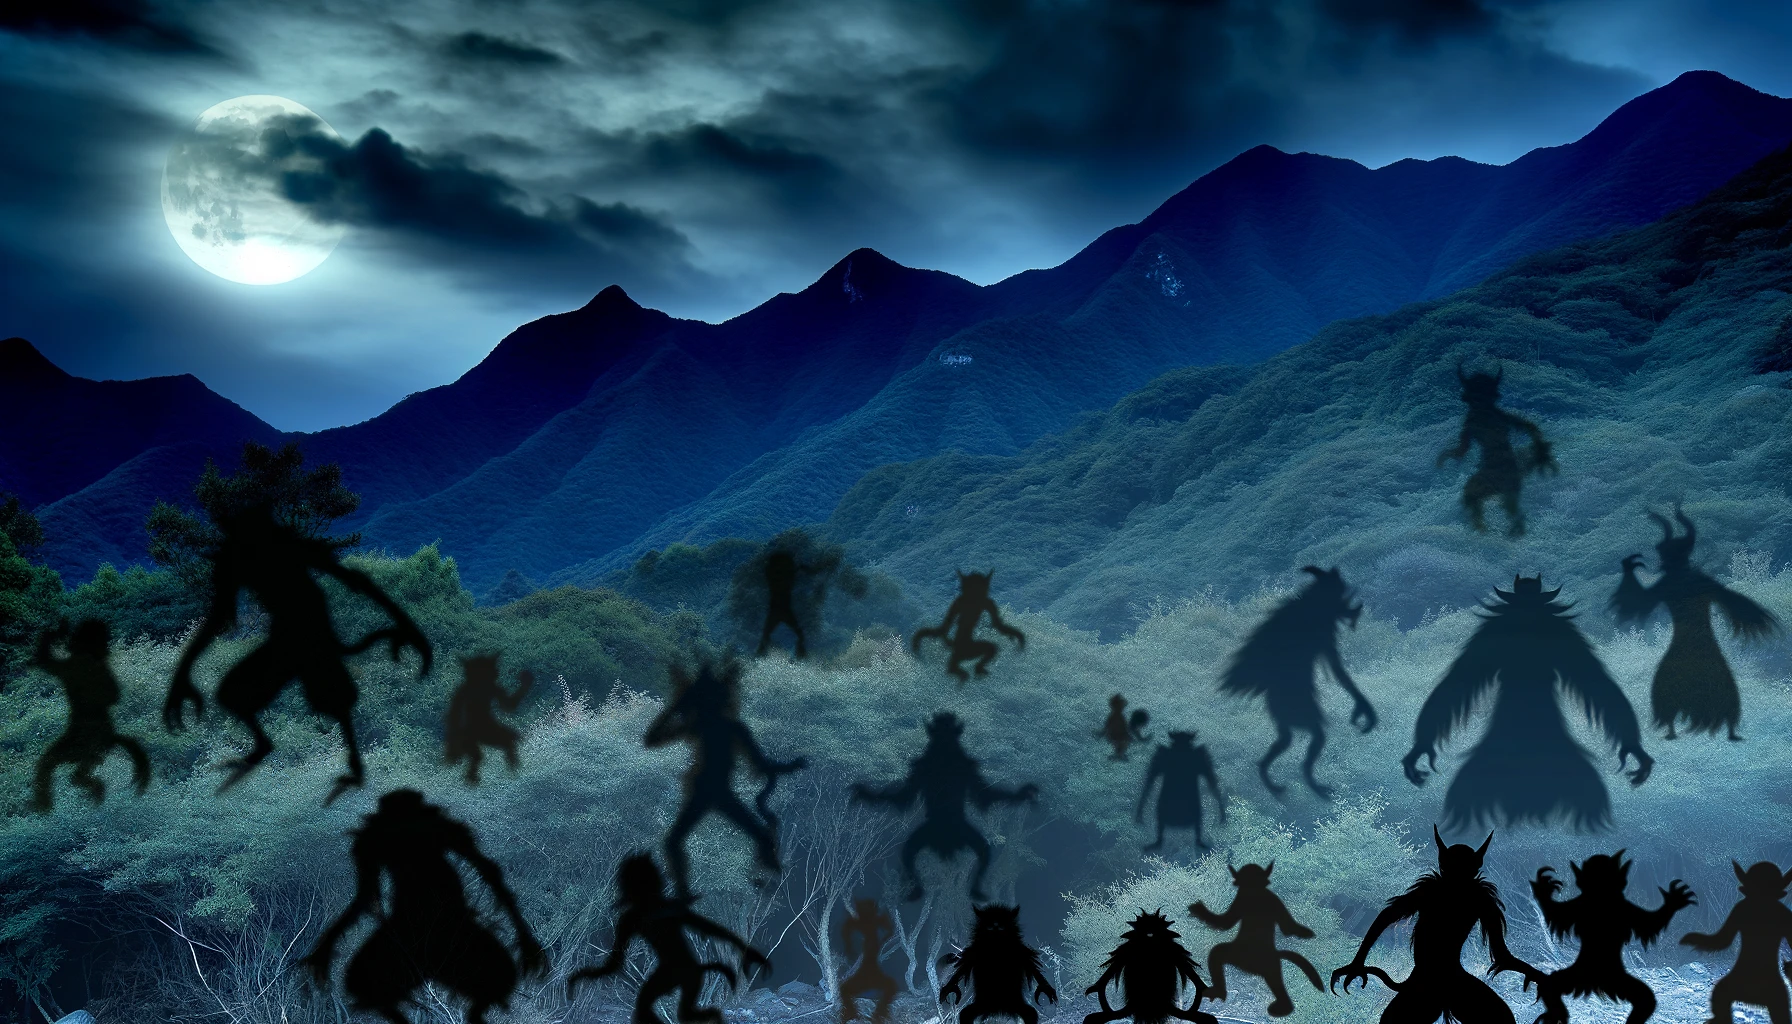 伊佐市の山々に潜む妖怪たちが月明かりの下、濃密な森林から姿を現す神秘的な風景。